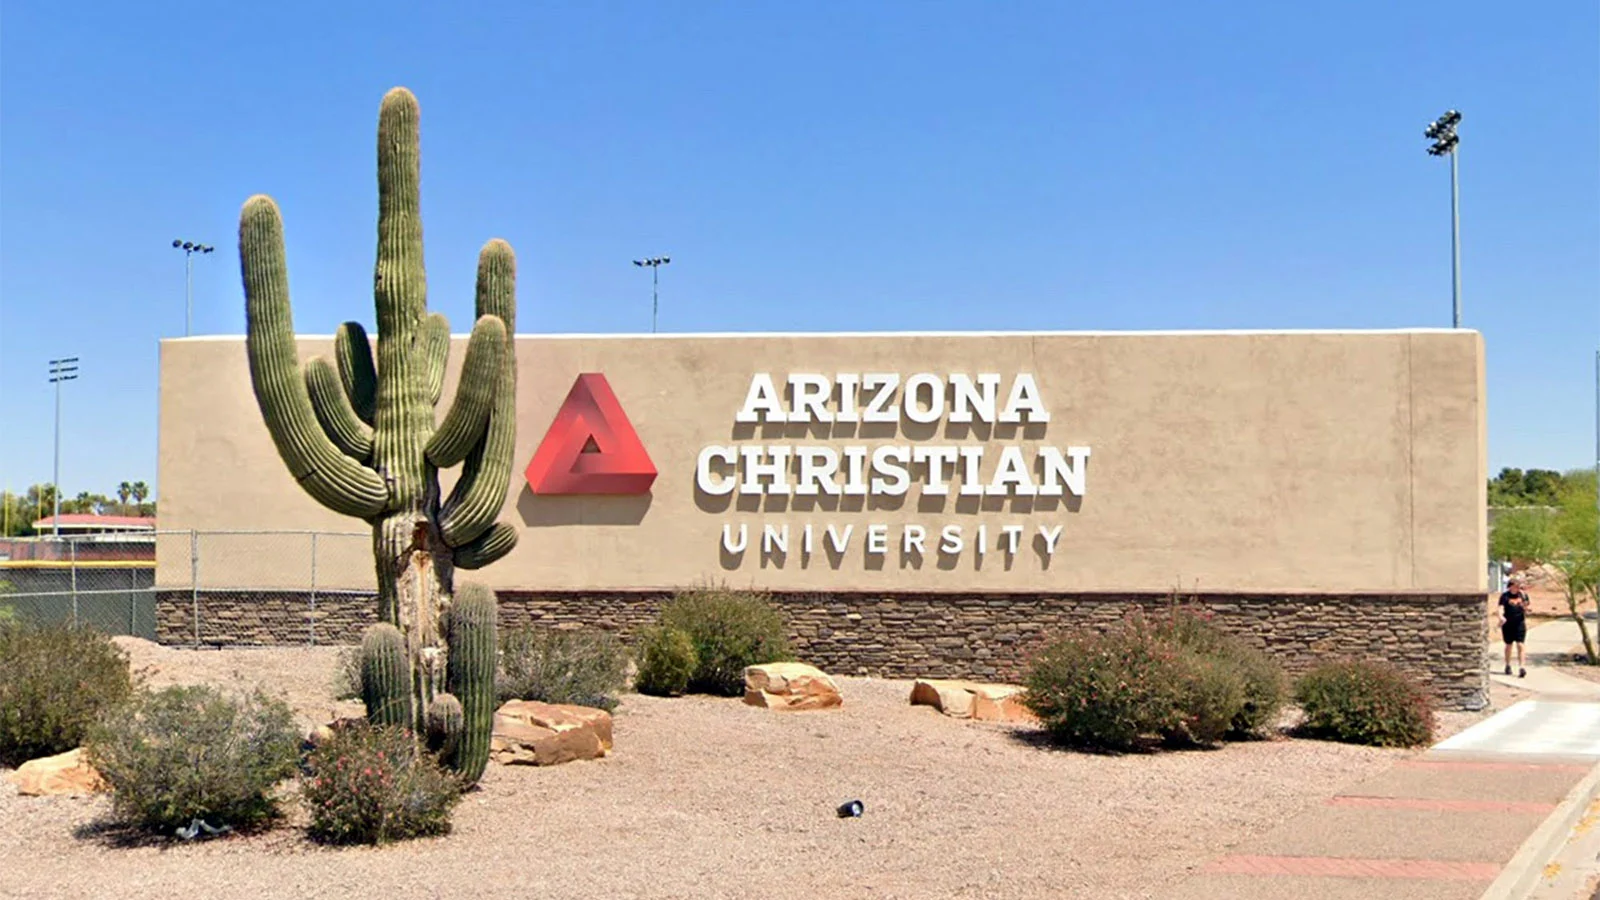 Image of Arizona Christian University’s Campus